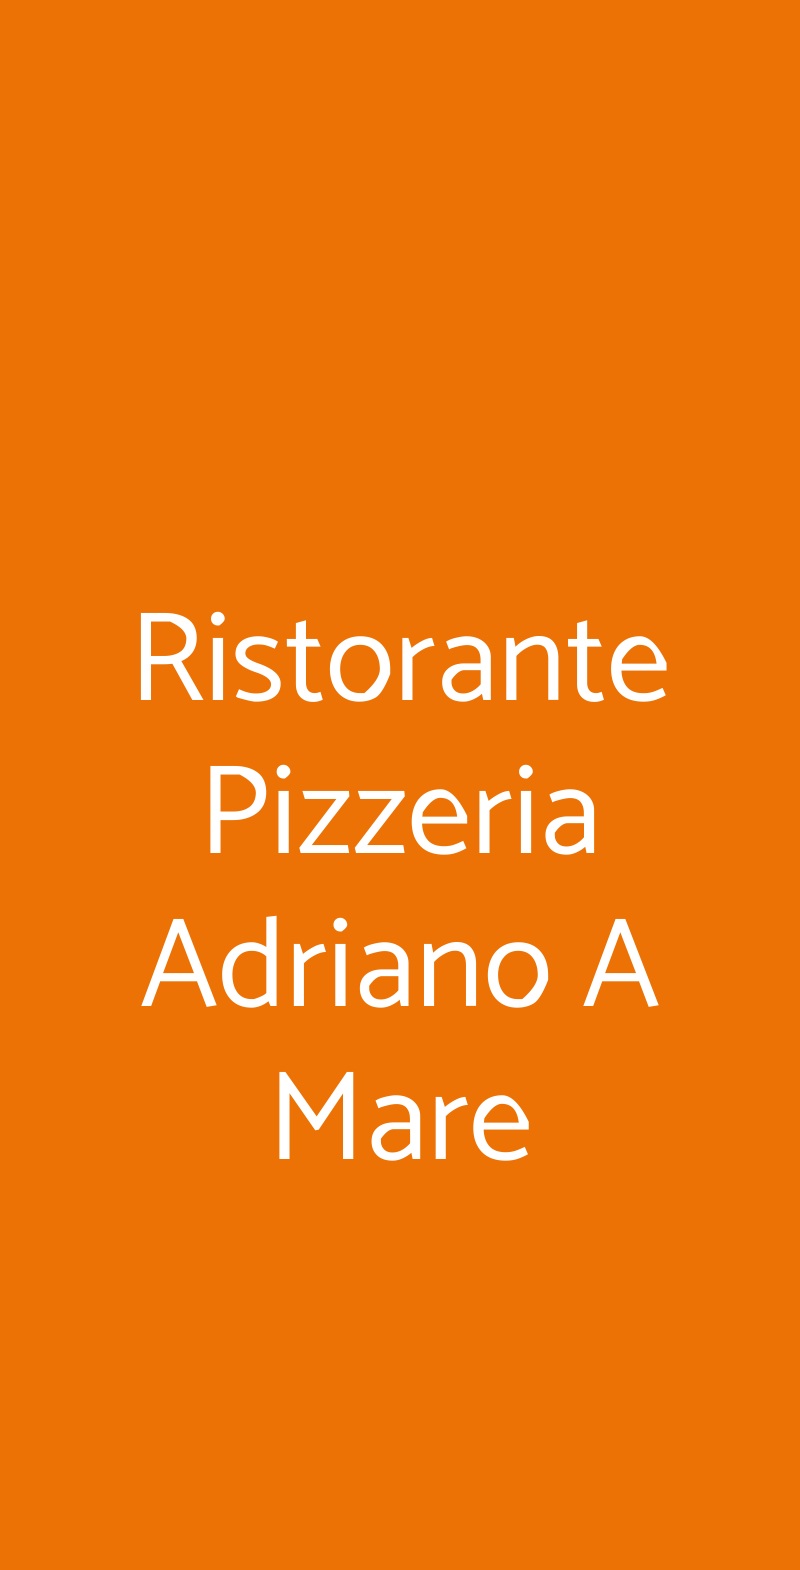 Ristorante Pizzeria Adriano A Mare Gaeta menù 1 pagina